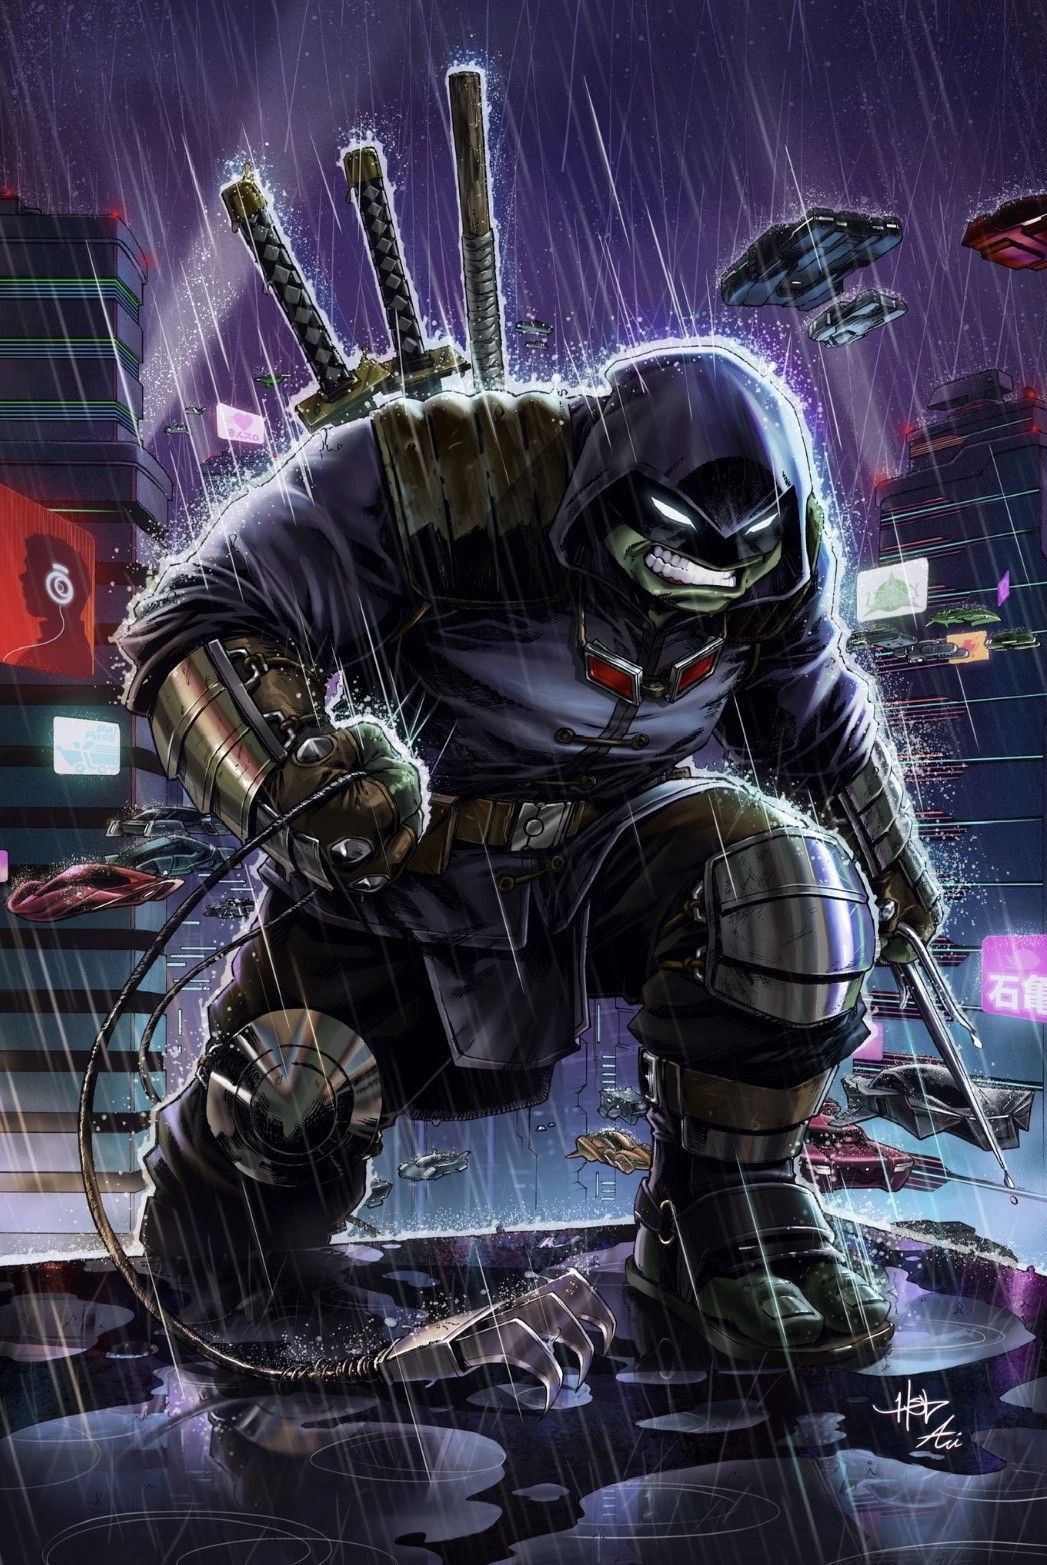 Teenage mutant ninja turtles artwork .com